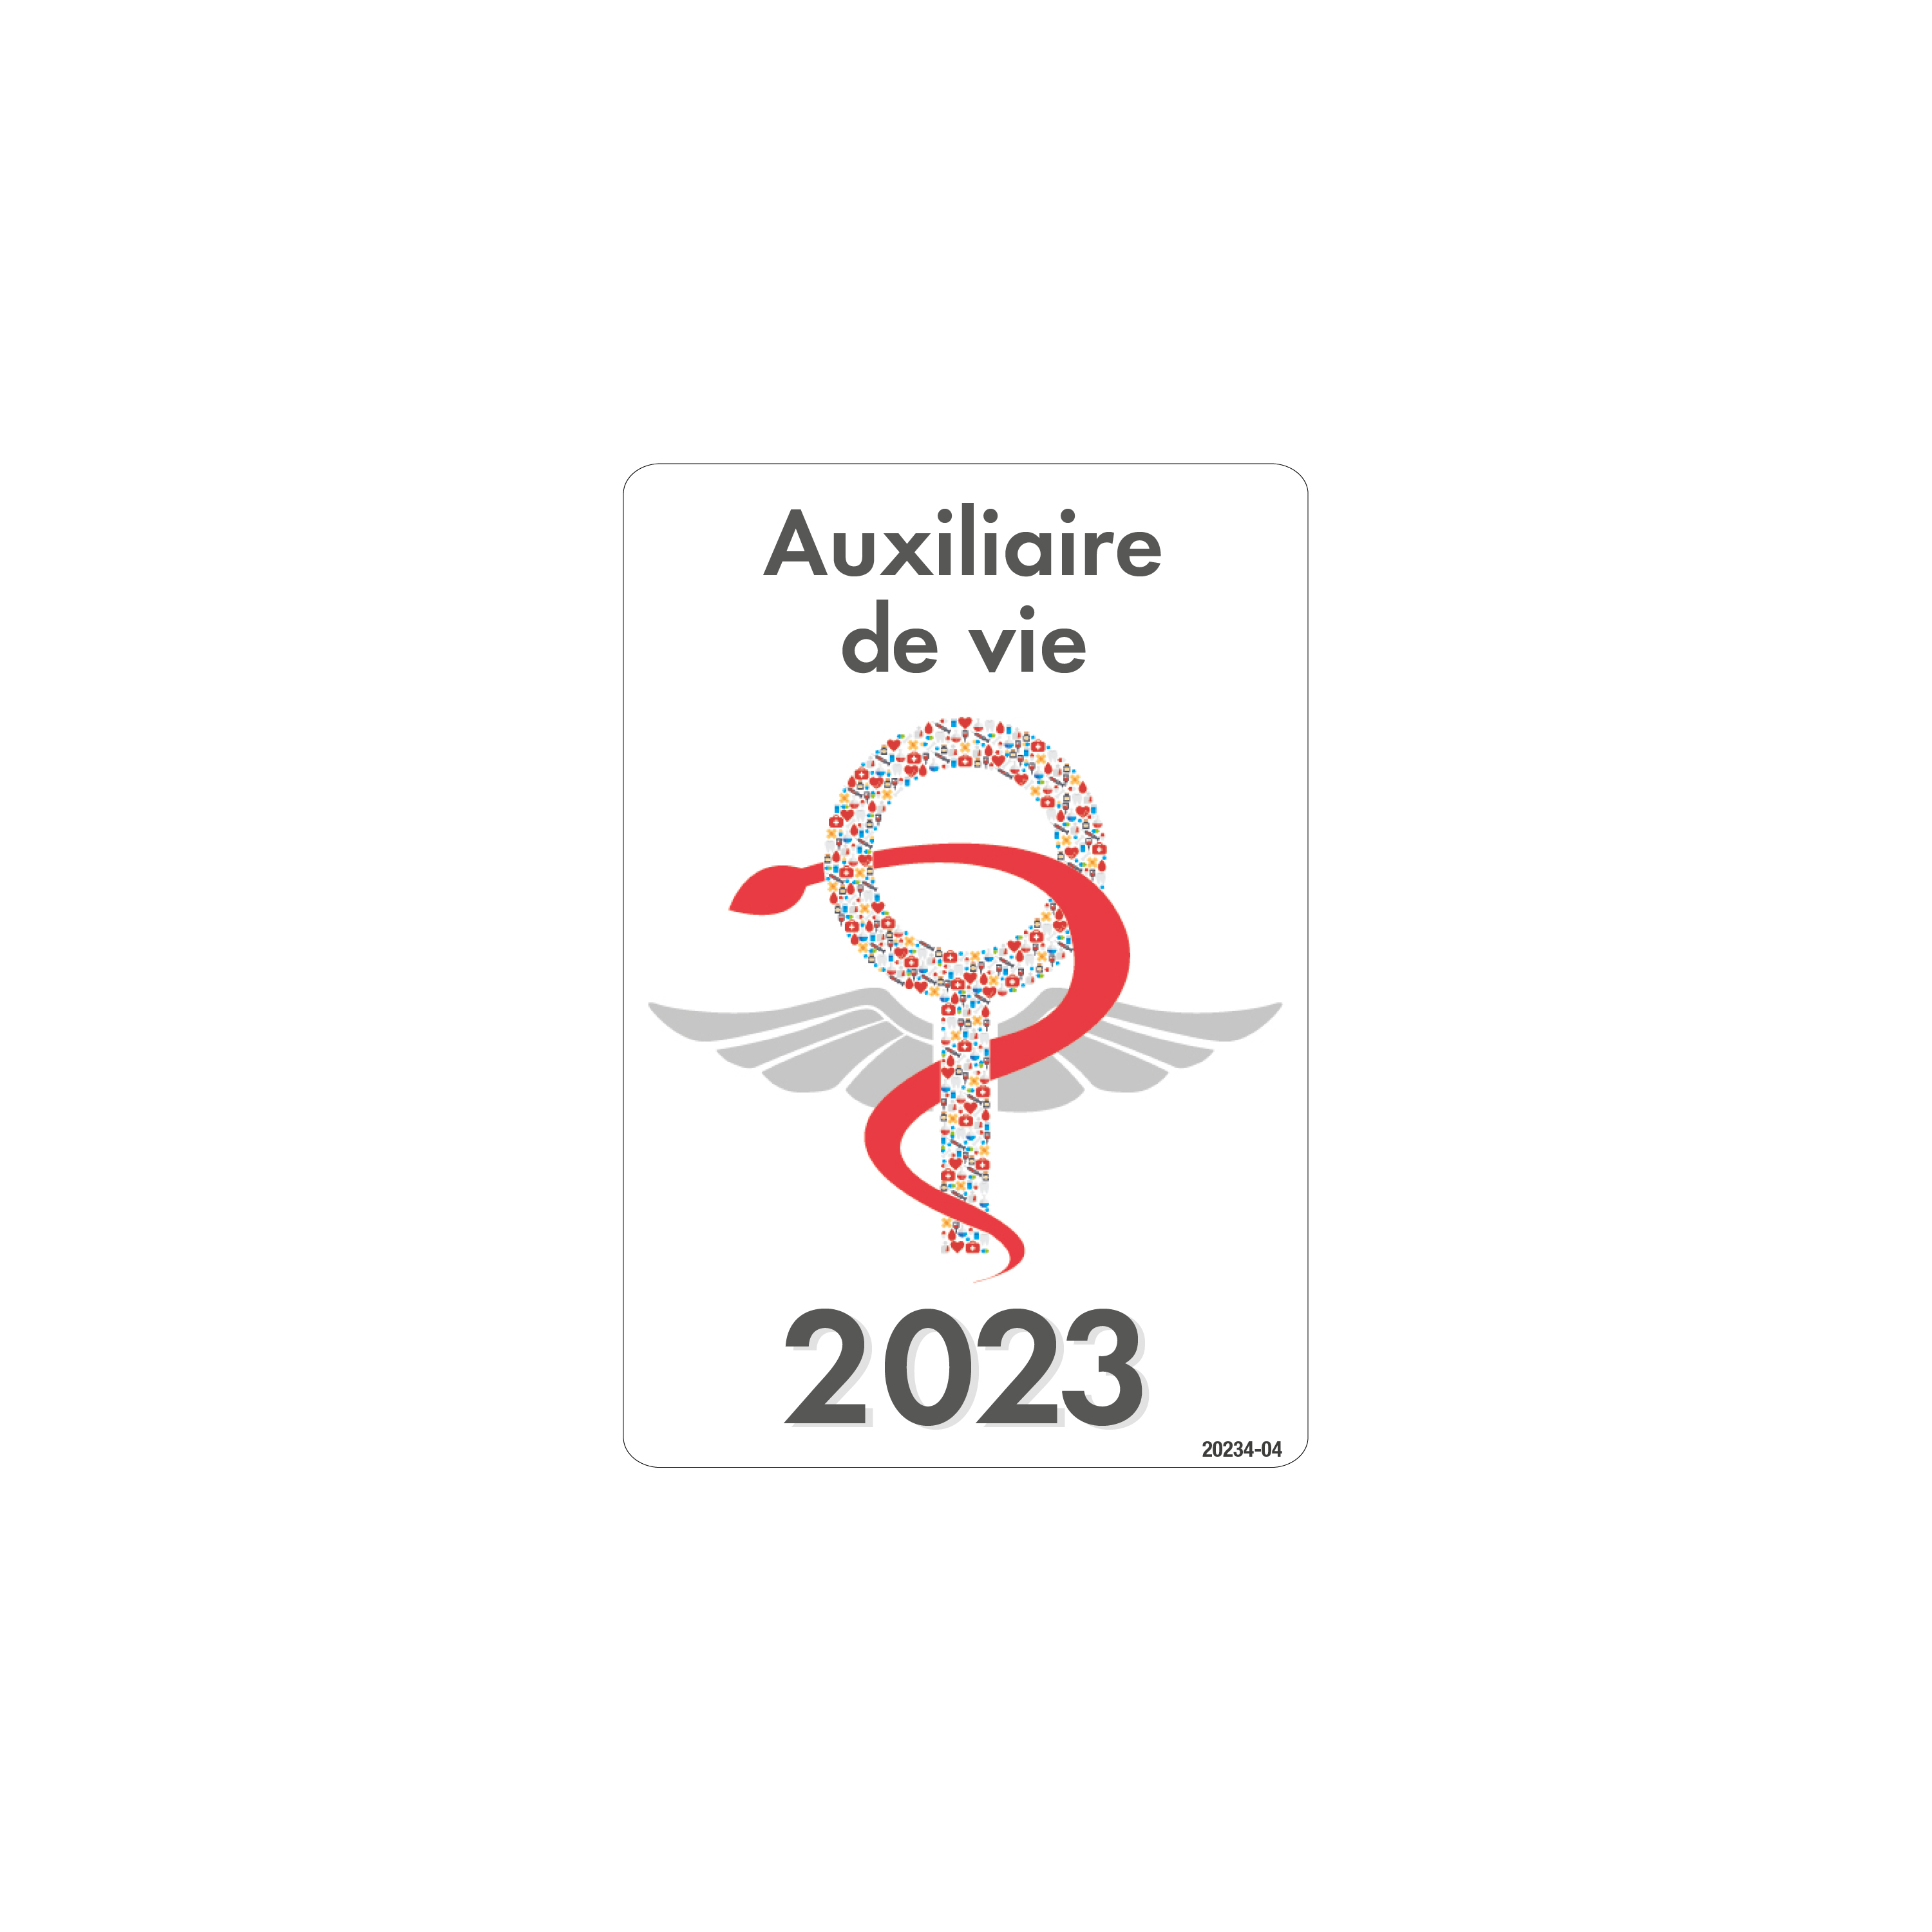 Caducée Aide Soignante Soins A Domicile 2024 + pochette adhésive